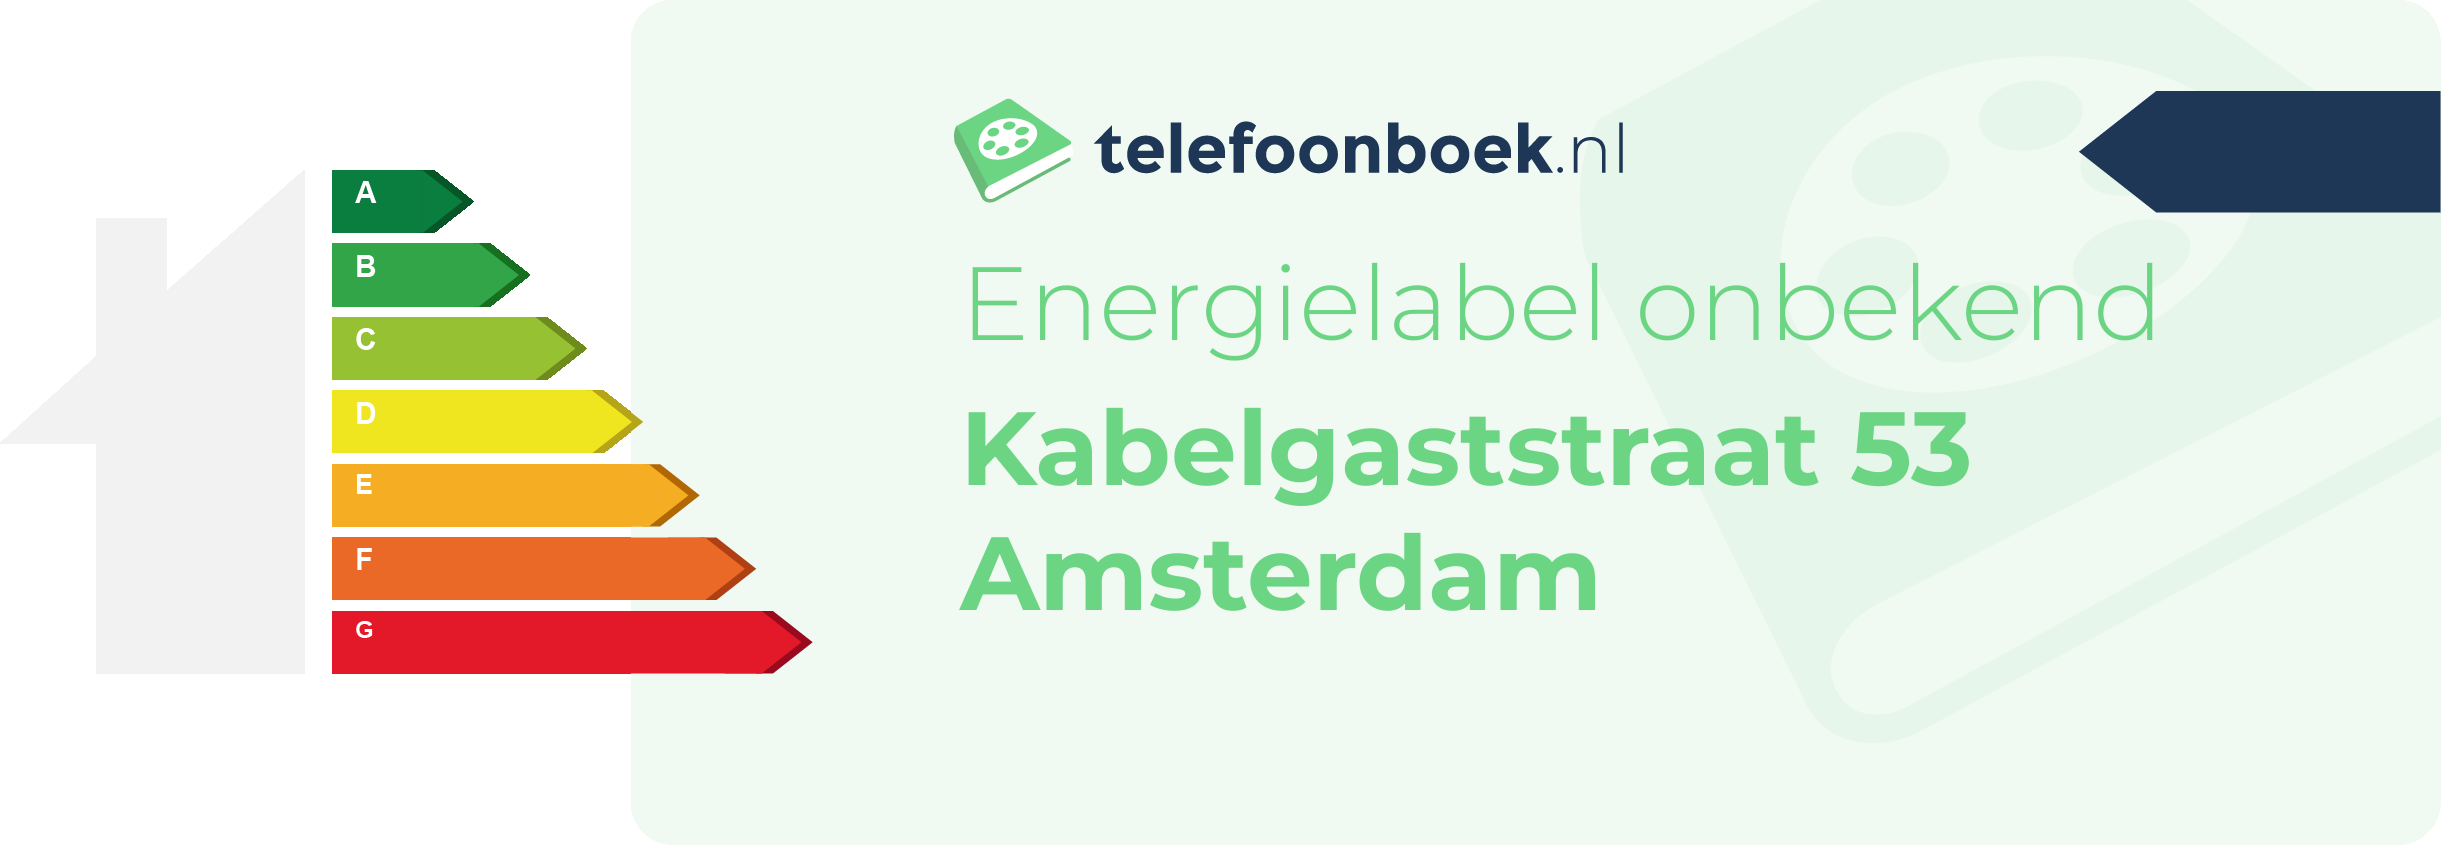 Energielabel Kabelgaststraat 53 Amsterdam